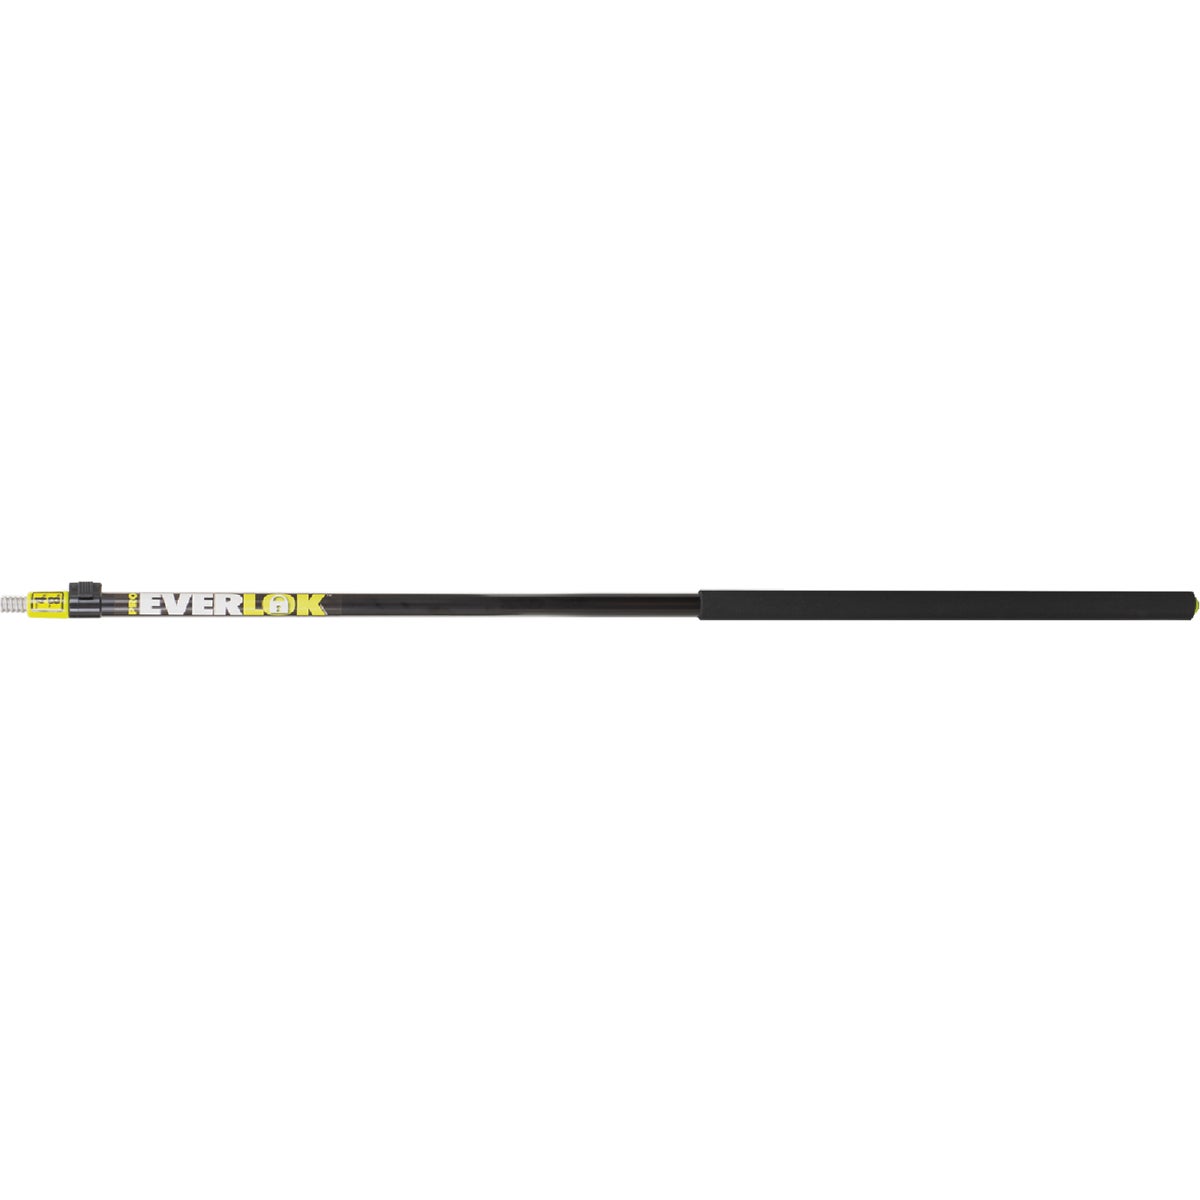 6572L Shur-line Easy Reach extension Pole